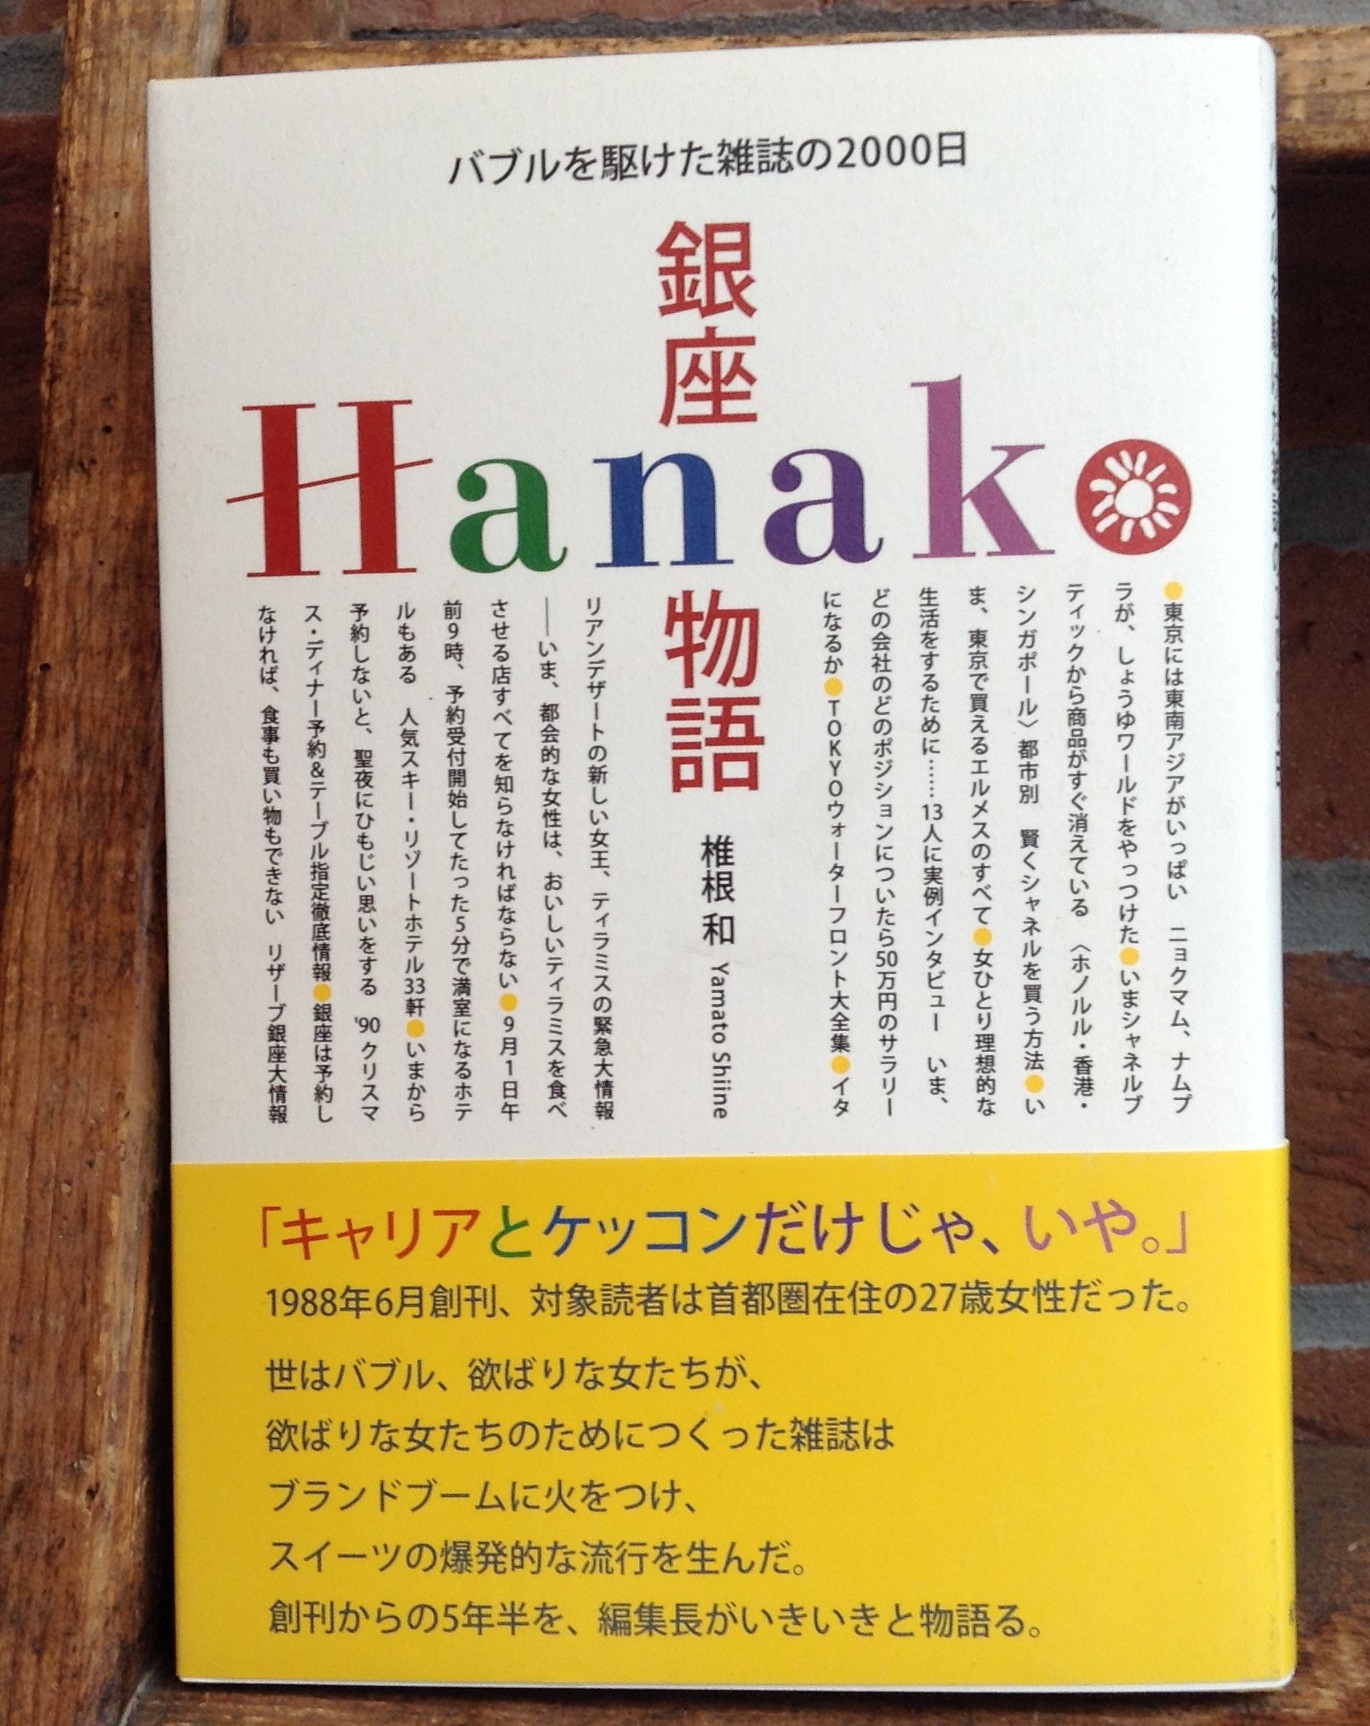 5月21日（水）『銀座Hanako物語』（紀伊國屋書店）刊行記念 椎根 和 × 高橋靖子トークイベント 「あのころの話をしよう」 